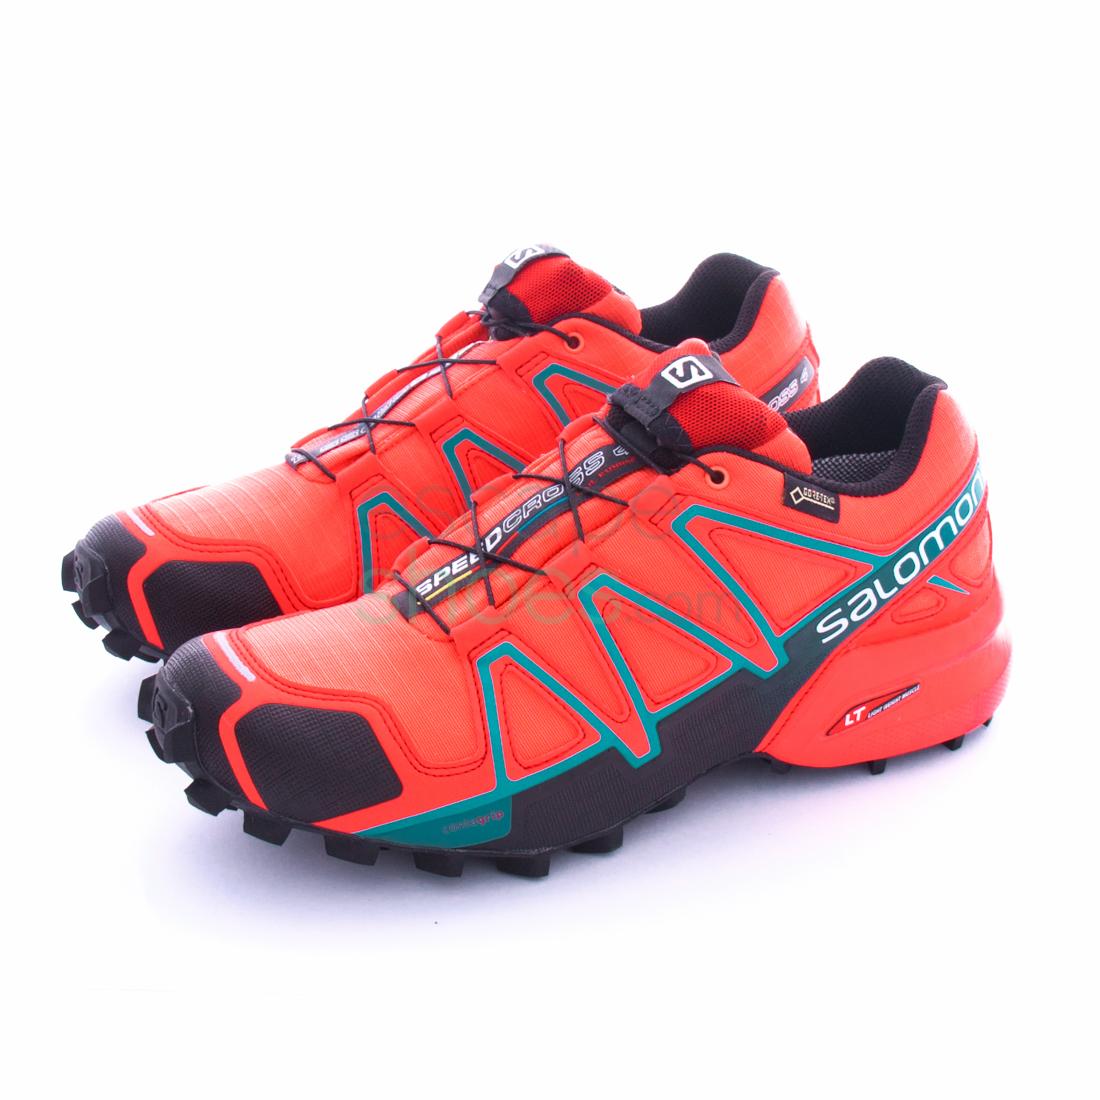 Zapatillas SALOMON Speedcross 4 Gore-Tex Coral Black Blue Jay 391836